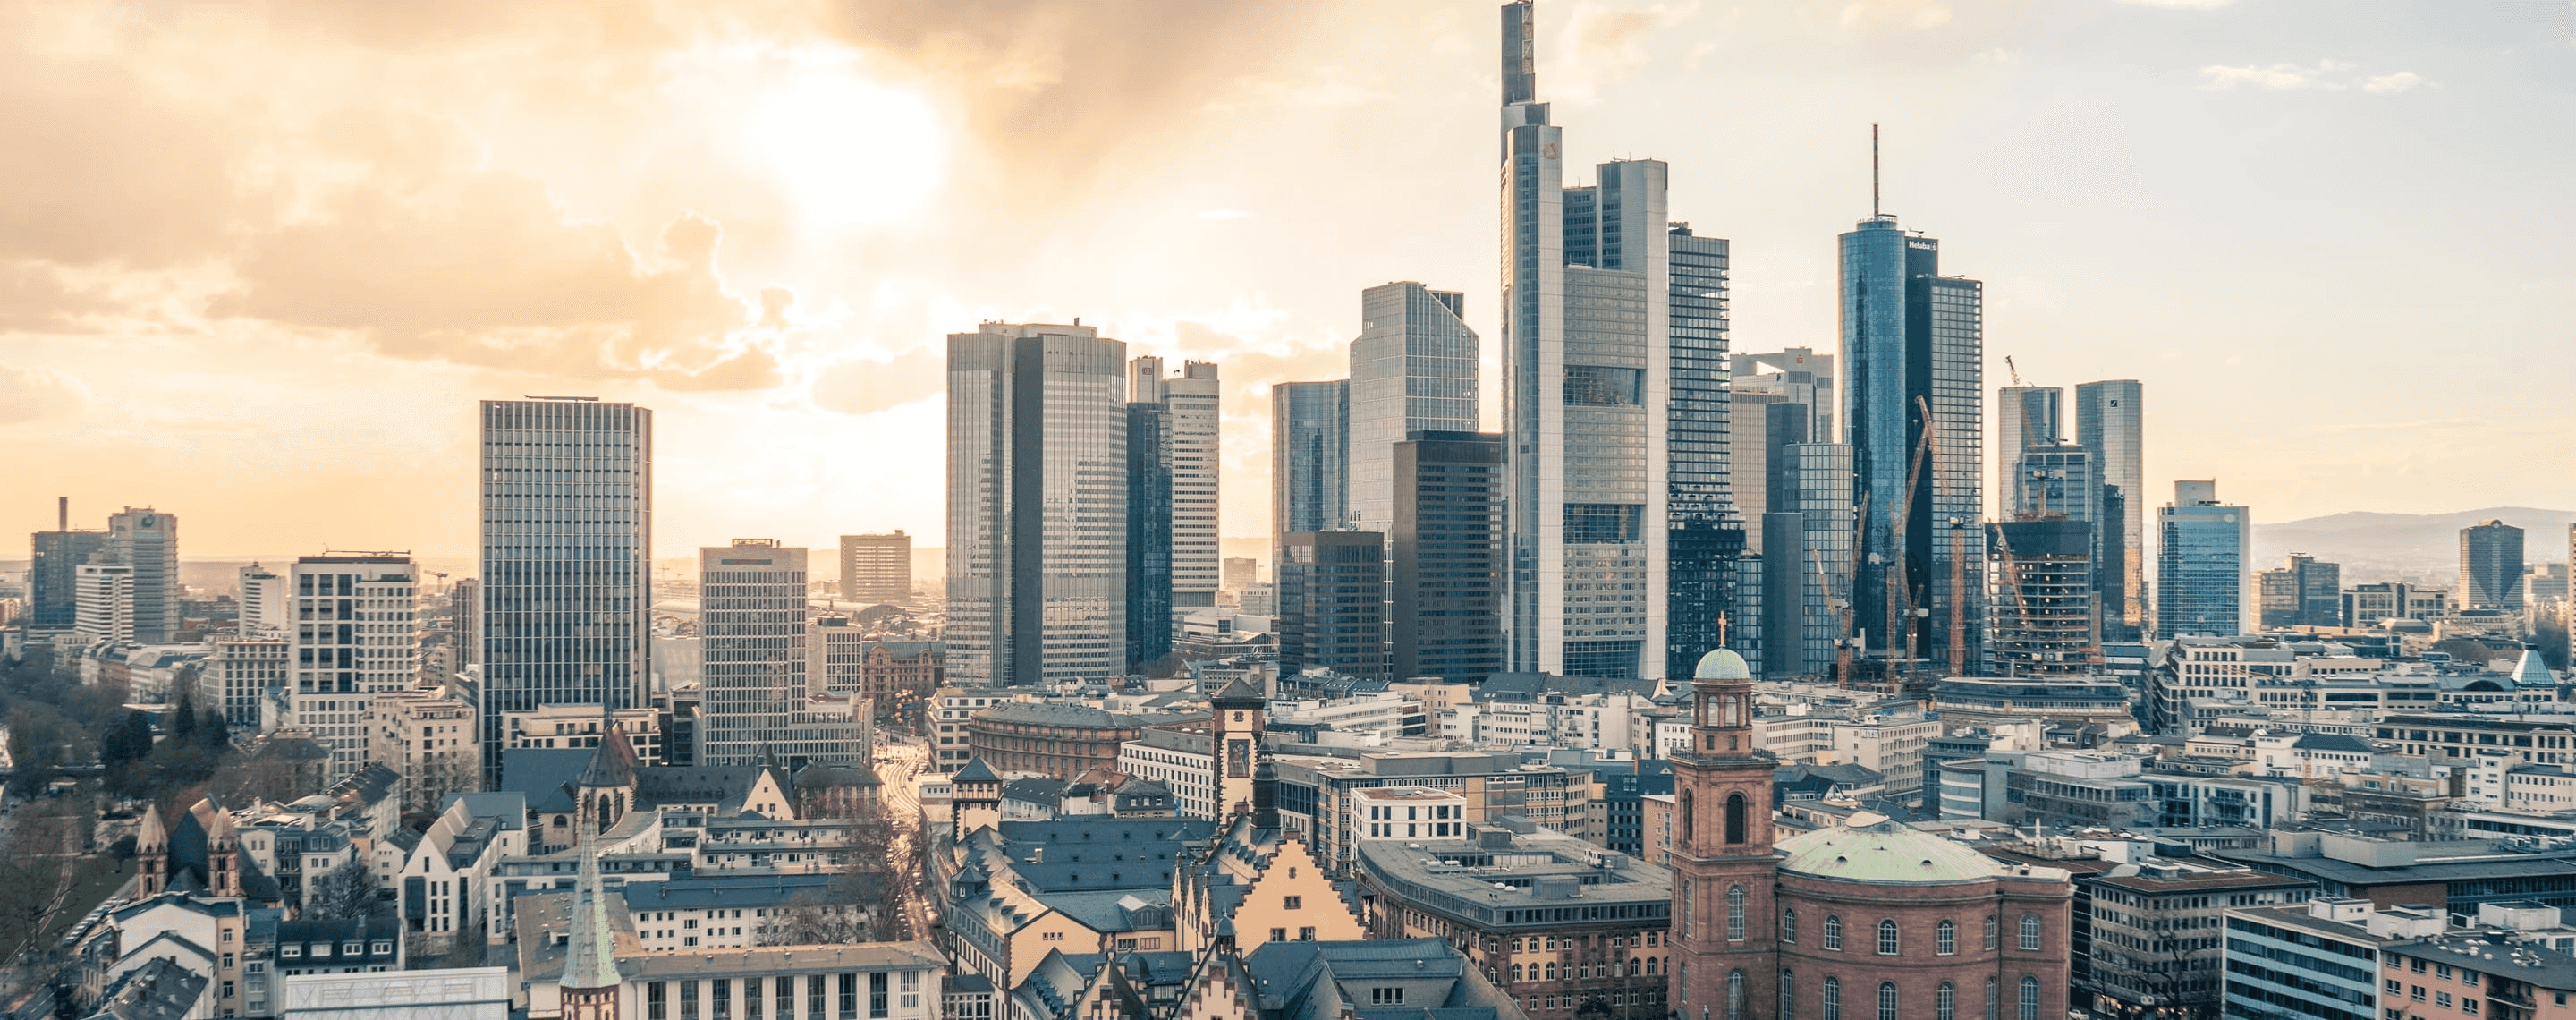 Panorama von Frankfurt mit Skyline